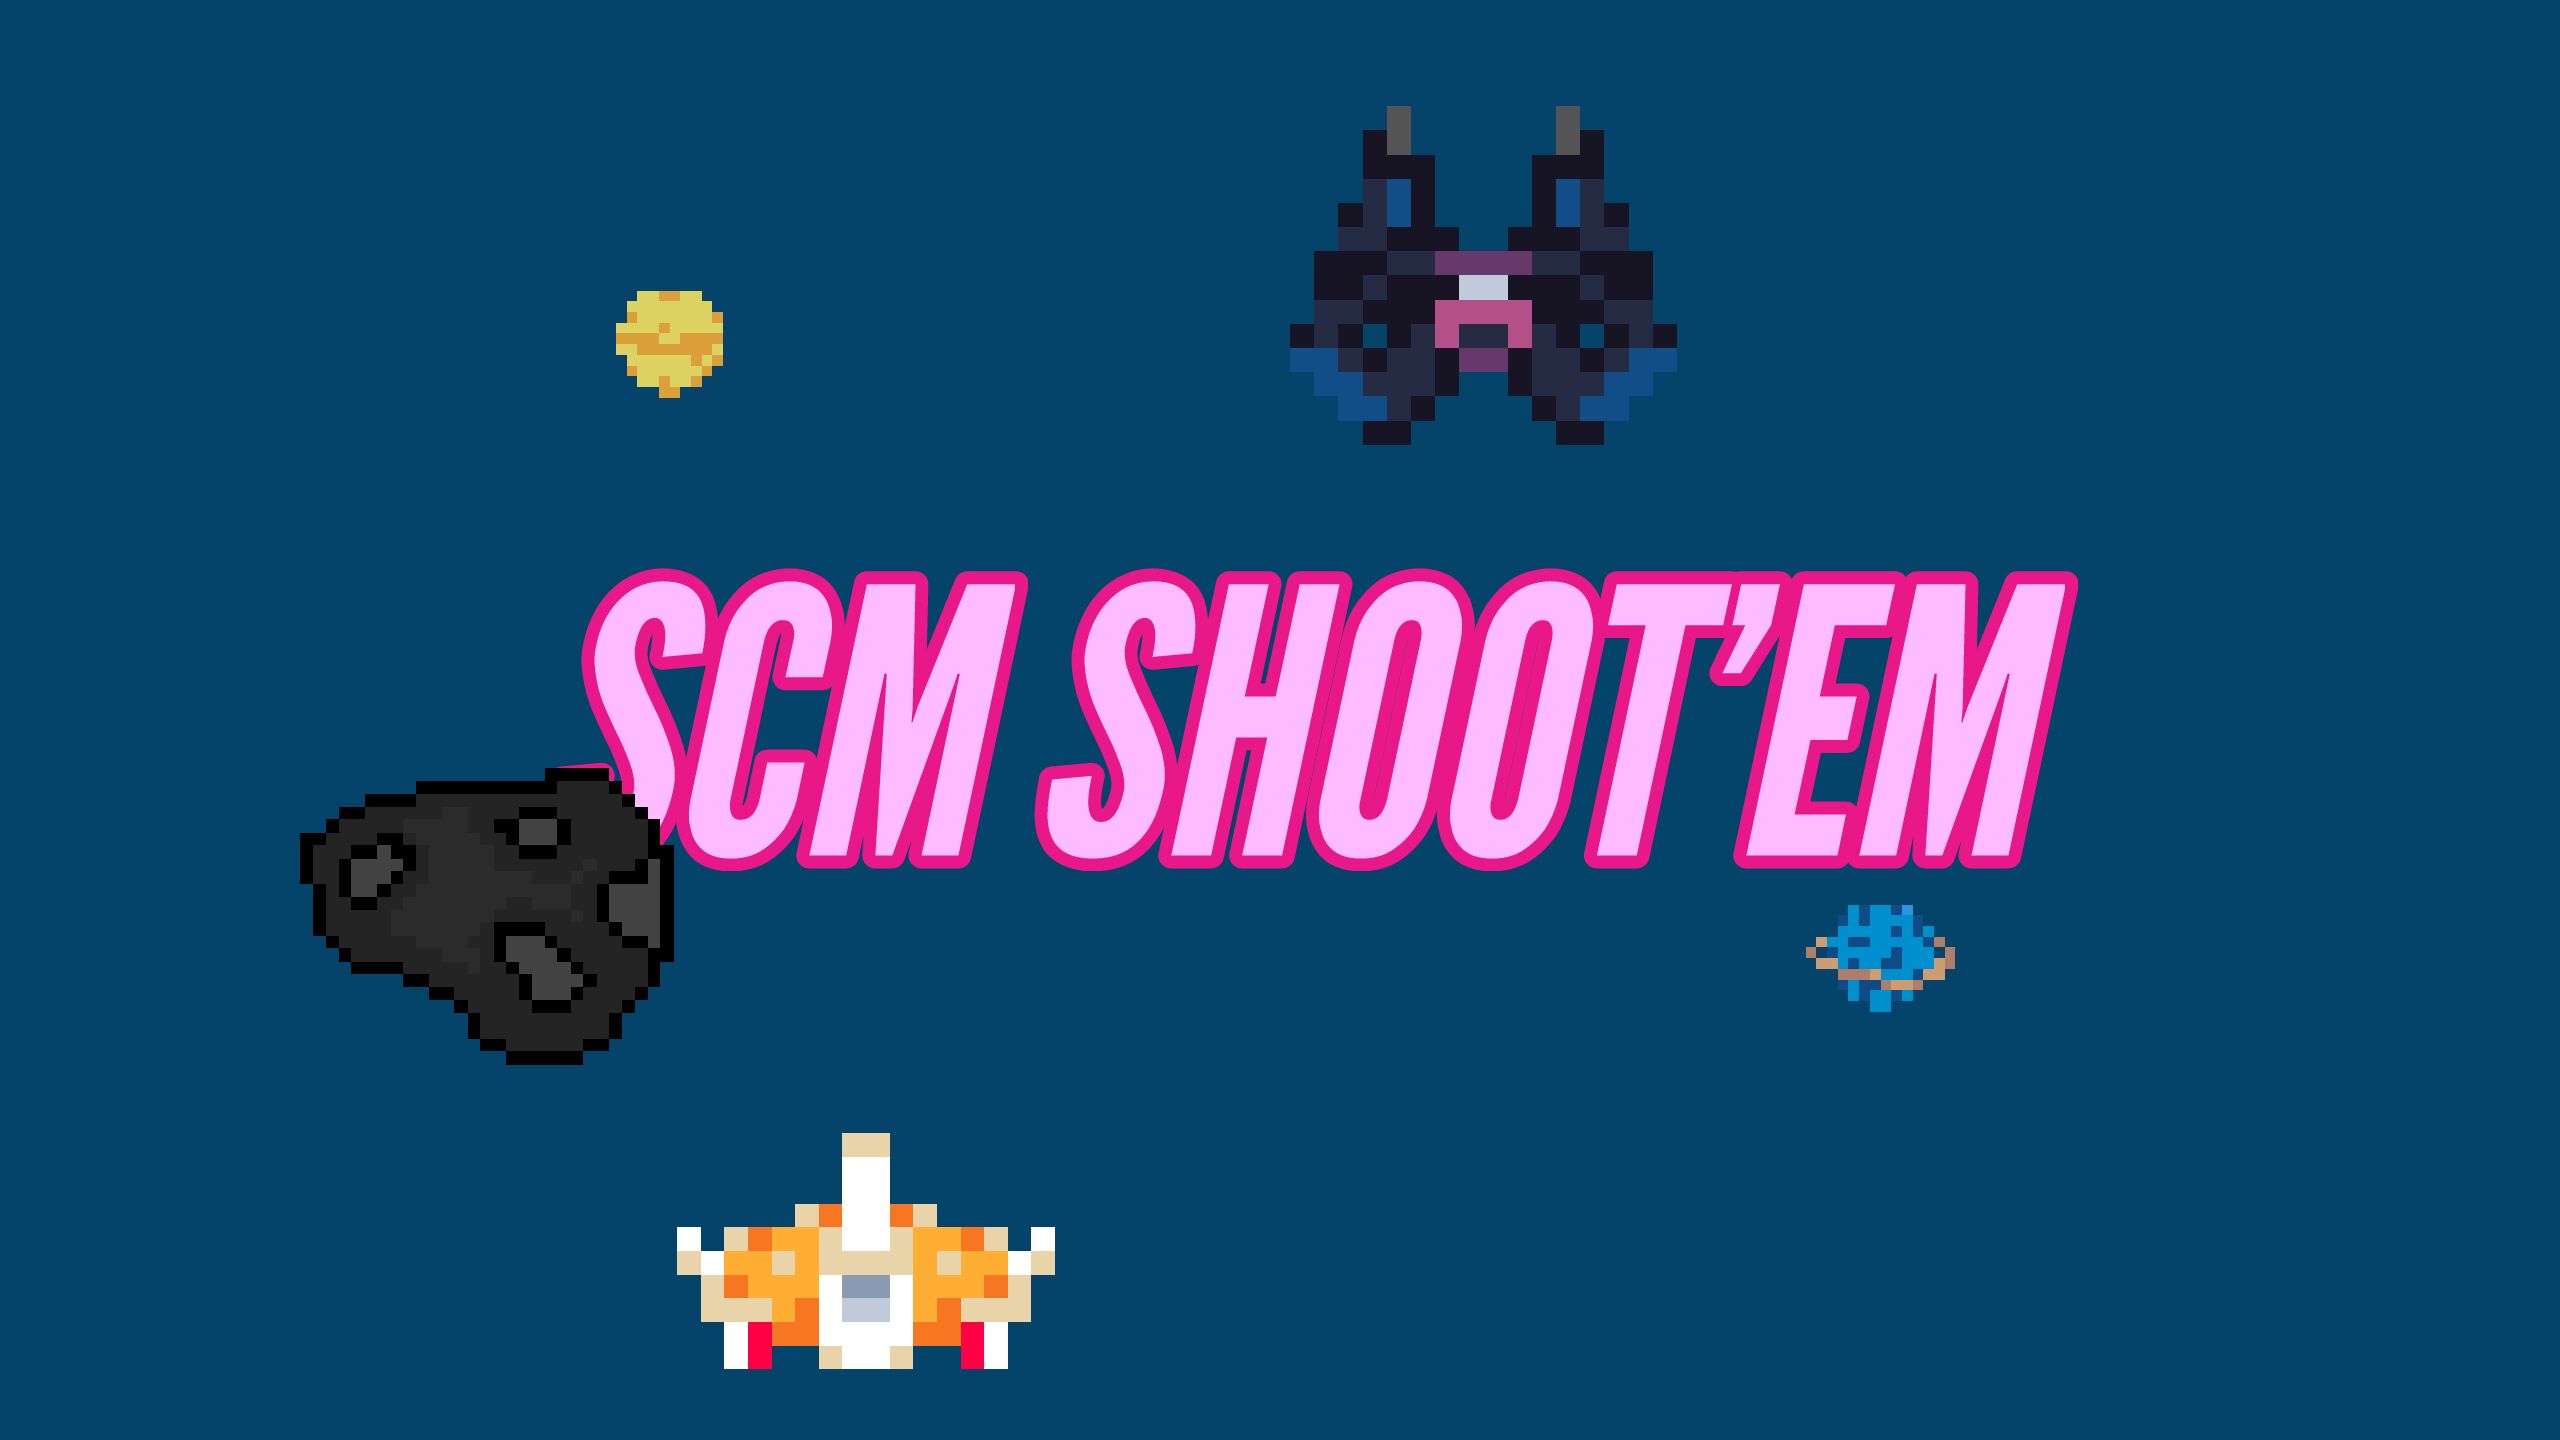 SCM Shoot'em DEMO